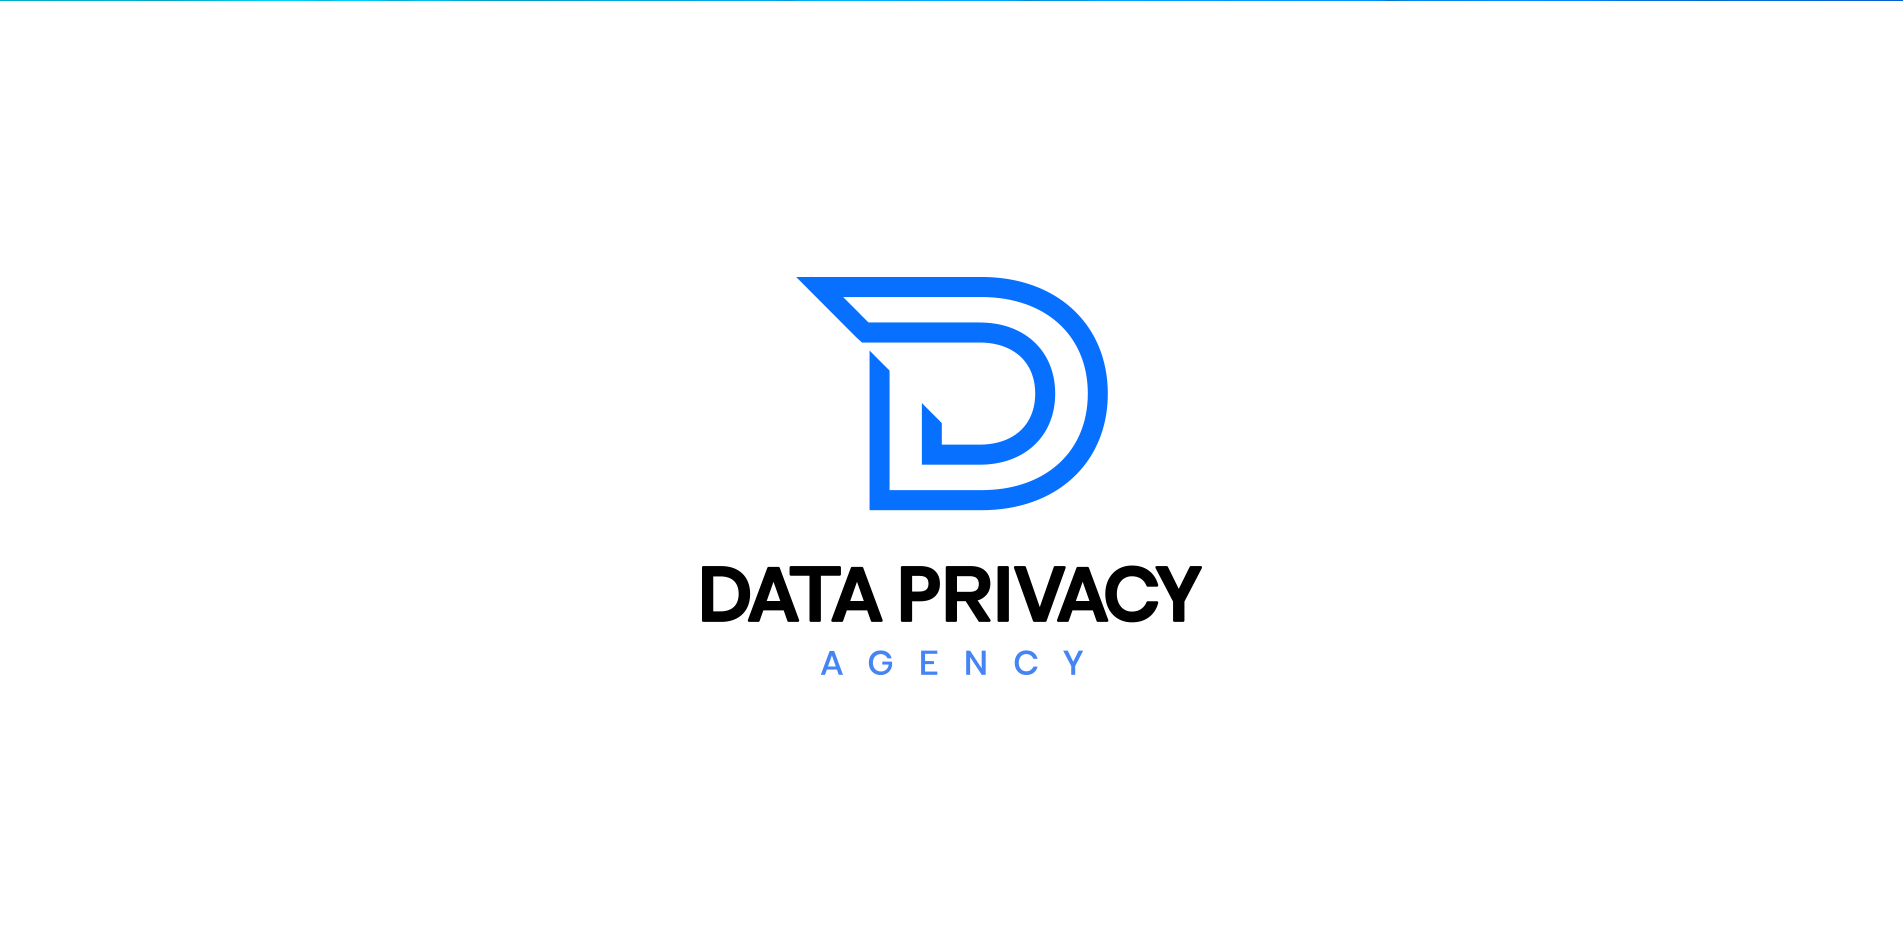 Data Privacy Agency Design